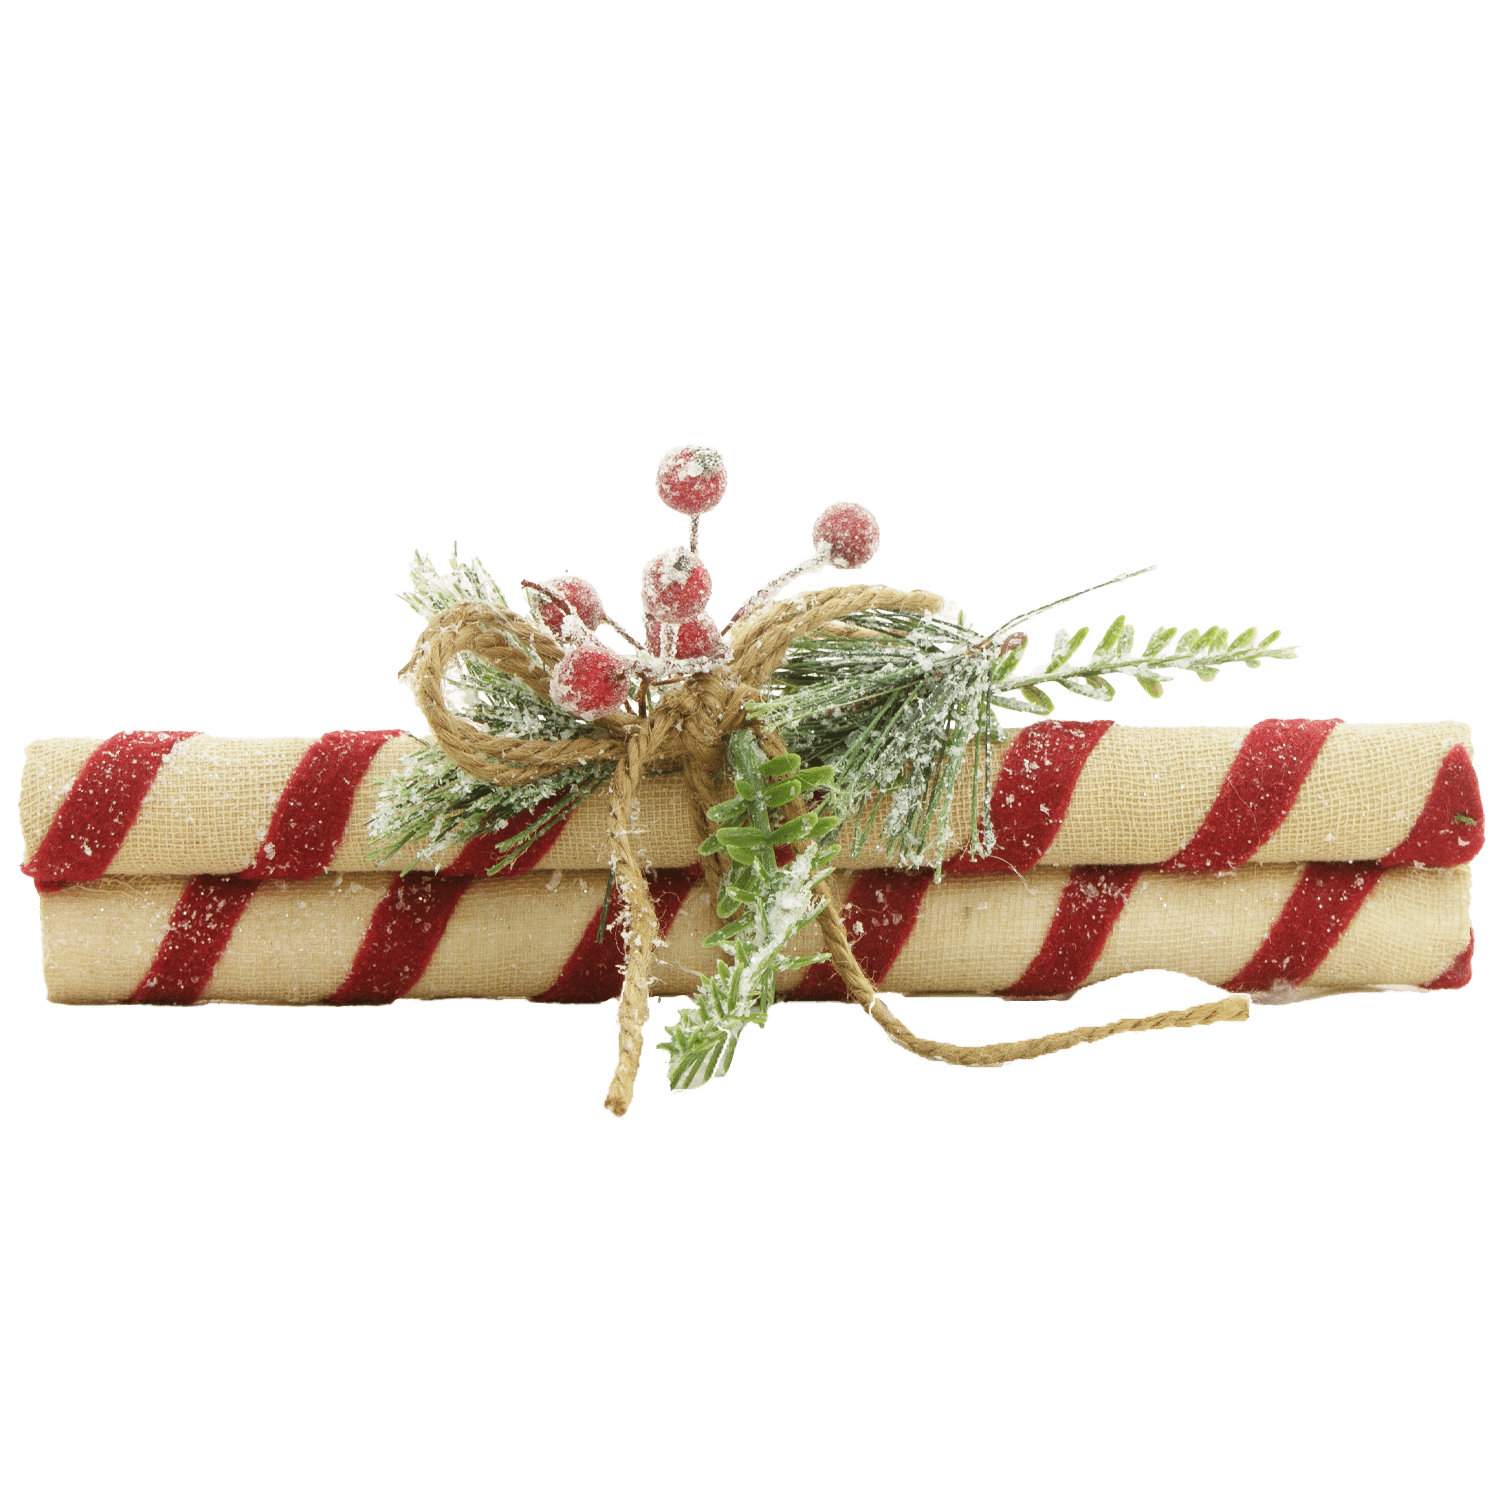 Primitive/Farmhouse Christmas 9&quot; Candy Cane Sticks Greens/Berries Bundle 3 pc - The Primitive Pineapple Collection